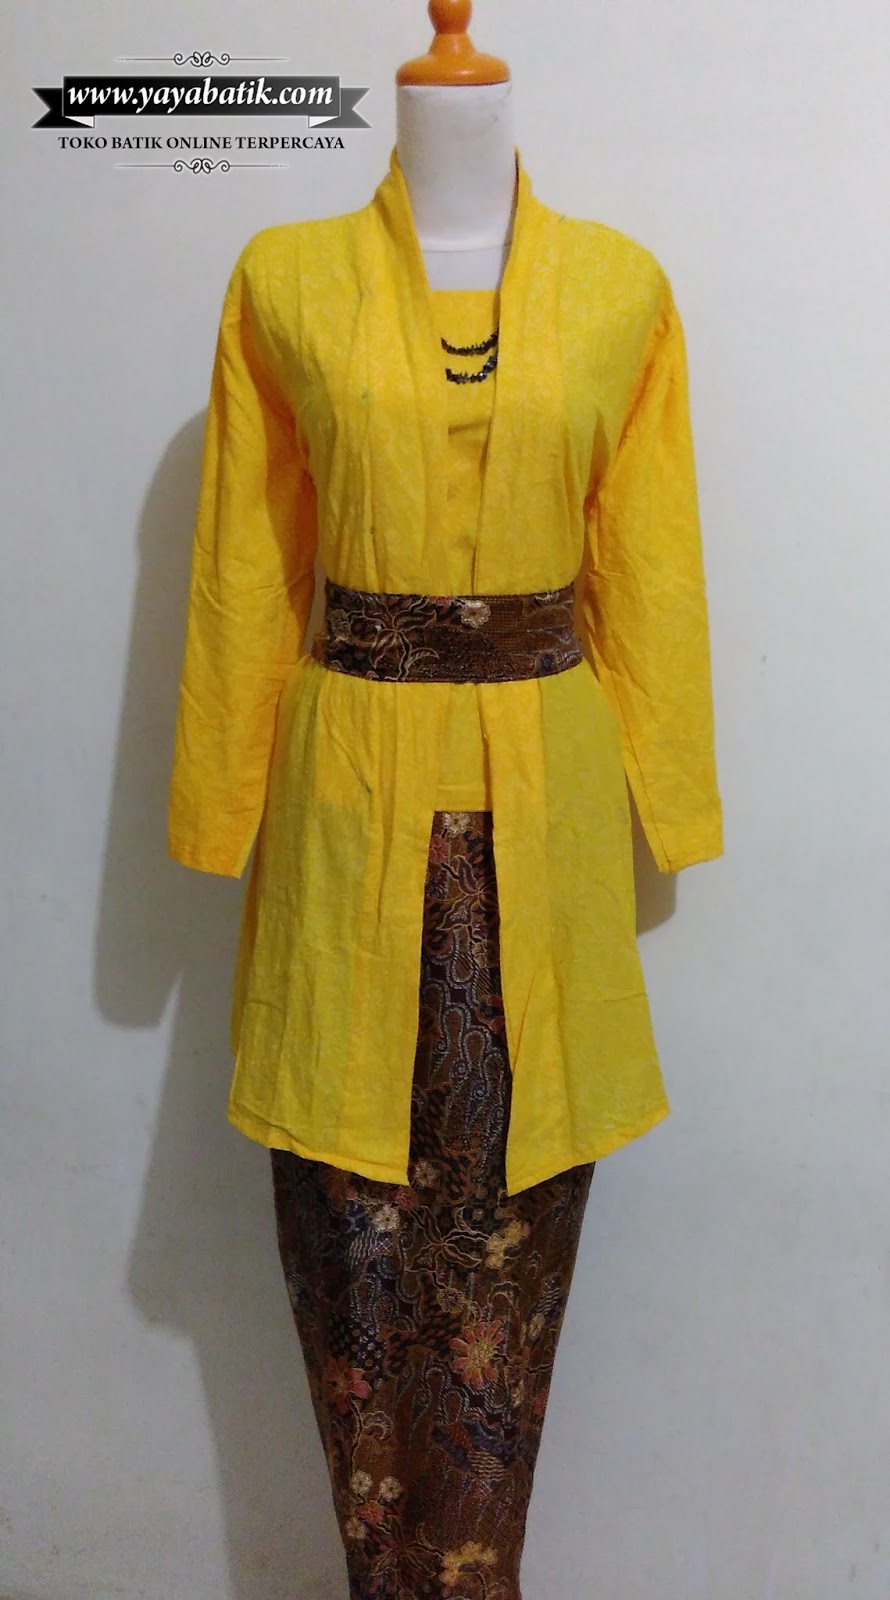 Kebaya Batik Kutu Baru Kuning - Toko Baju Batik Online 